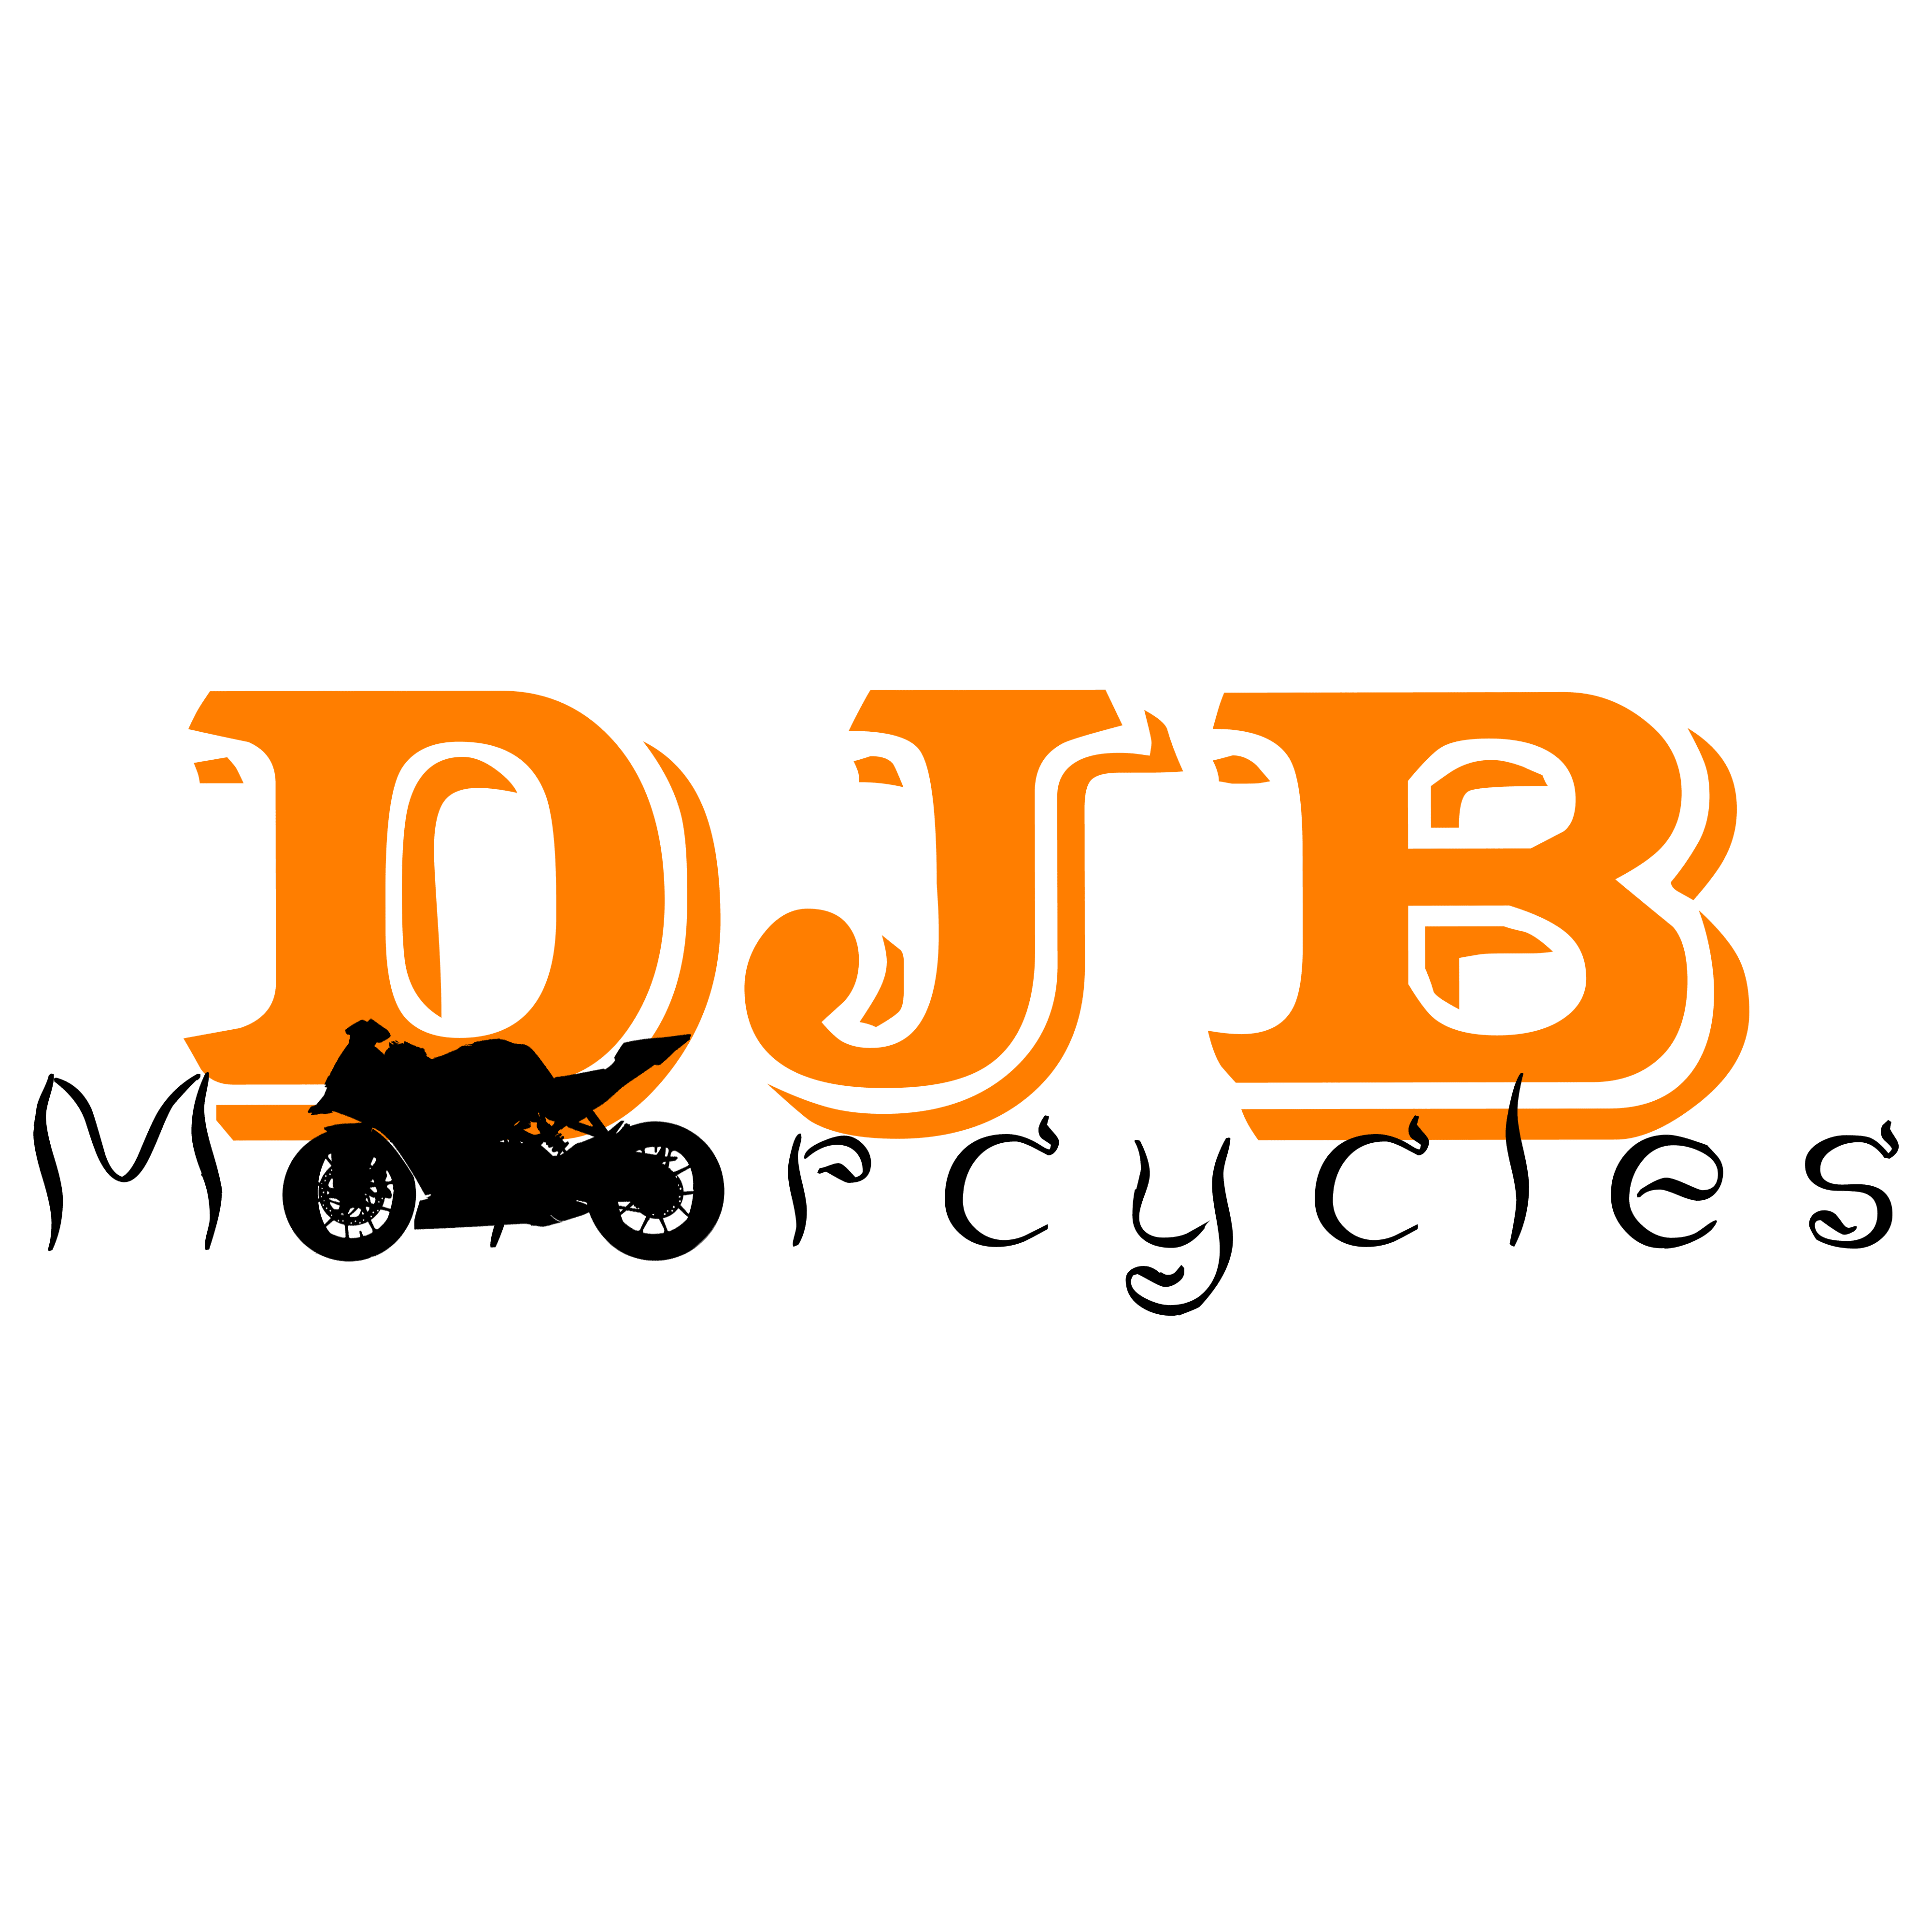 DJB Motorcycles